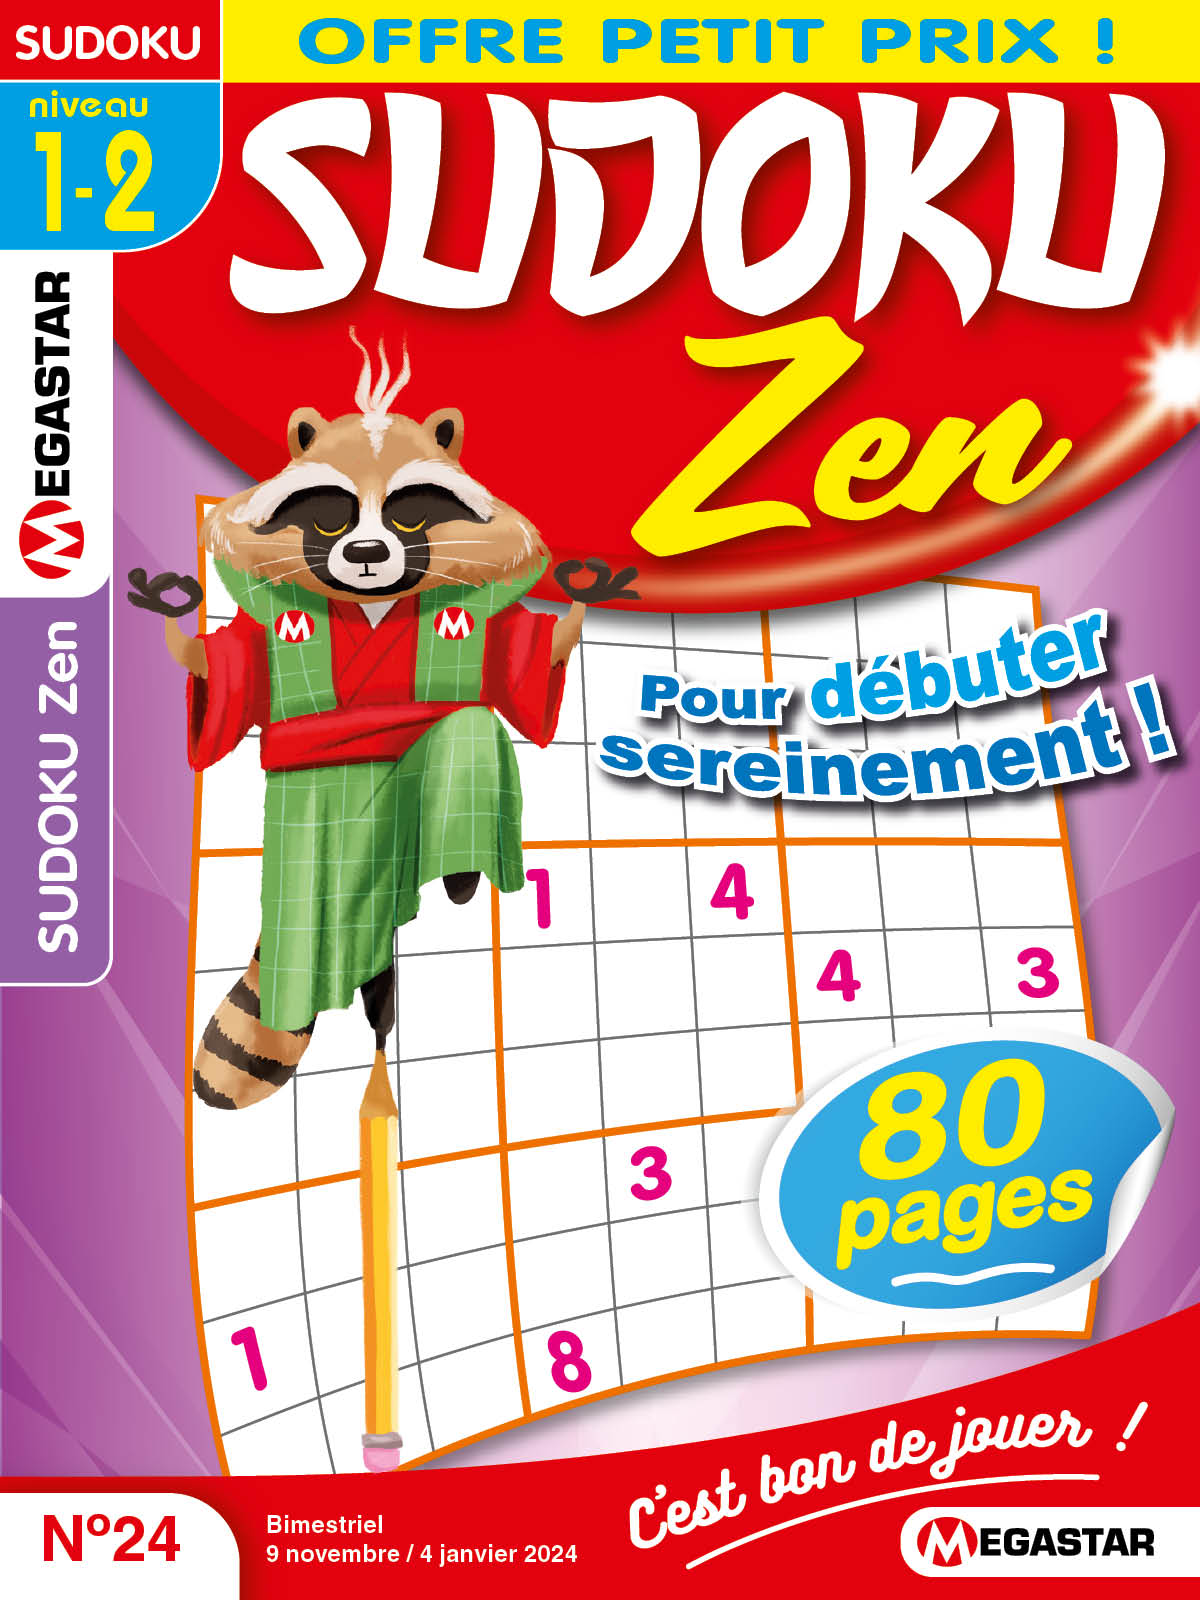 Hiroba - Le sudoku zen mais stratégique - Pixel Adventurers